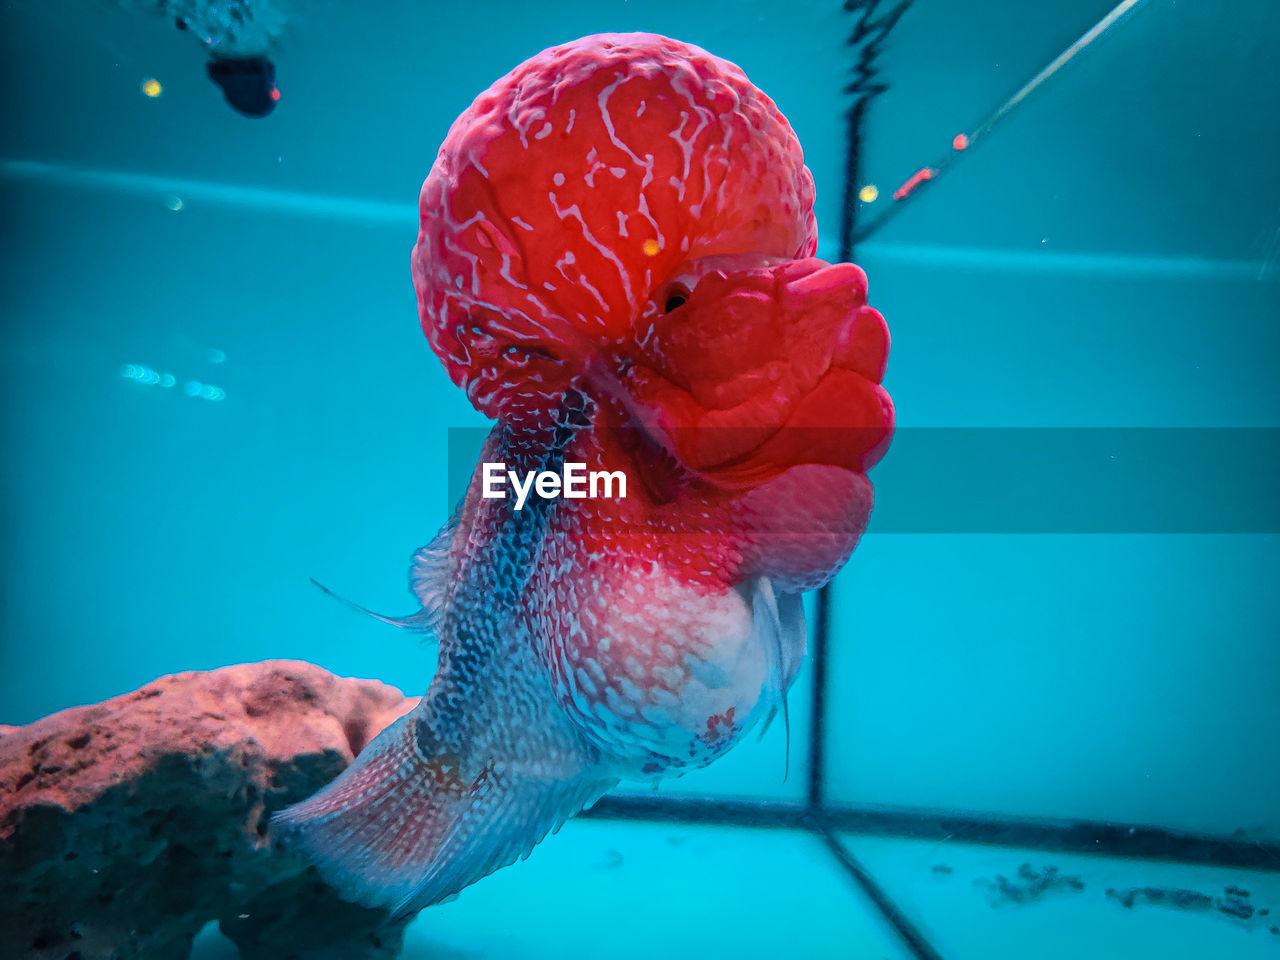 Beautiful elegant flowerhorn cichlid fish inside an aquarium.